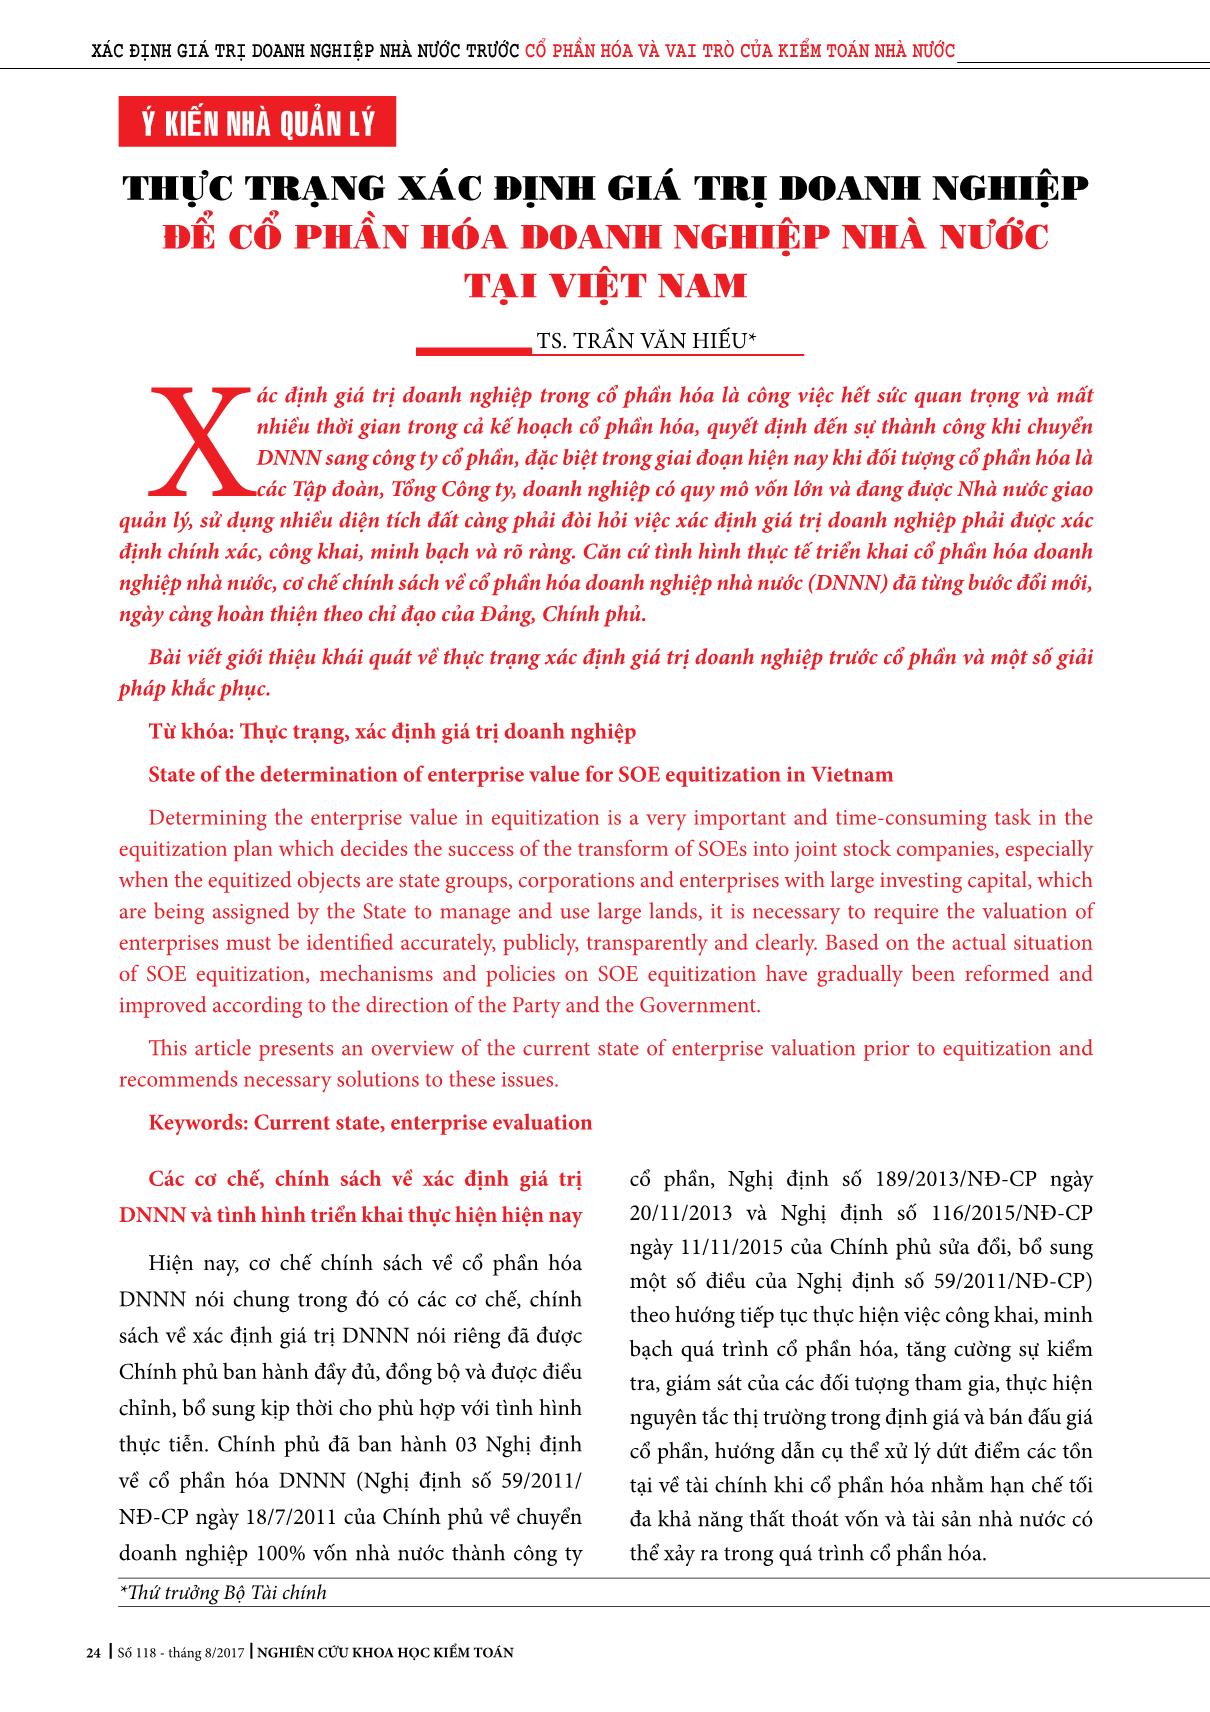 Thực trạng xác định giá trị doanh nghiệp để cổ phần hóa doanh nghiệp nhà nước tại Việt Nam trang 1